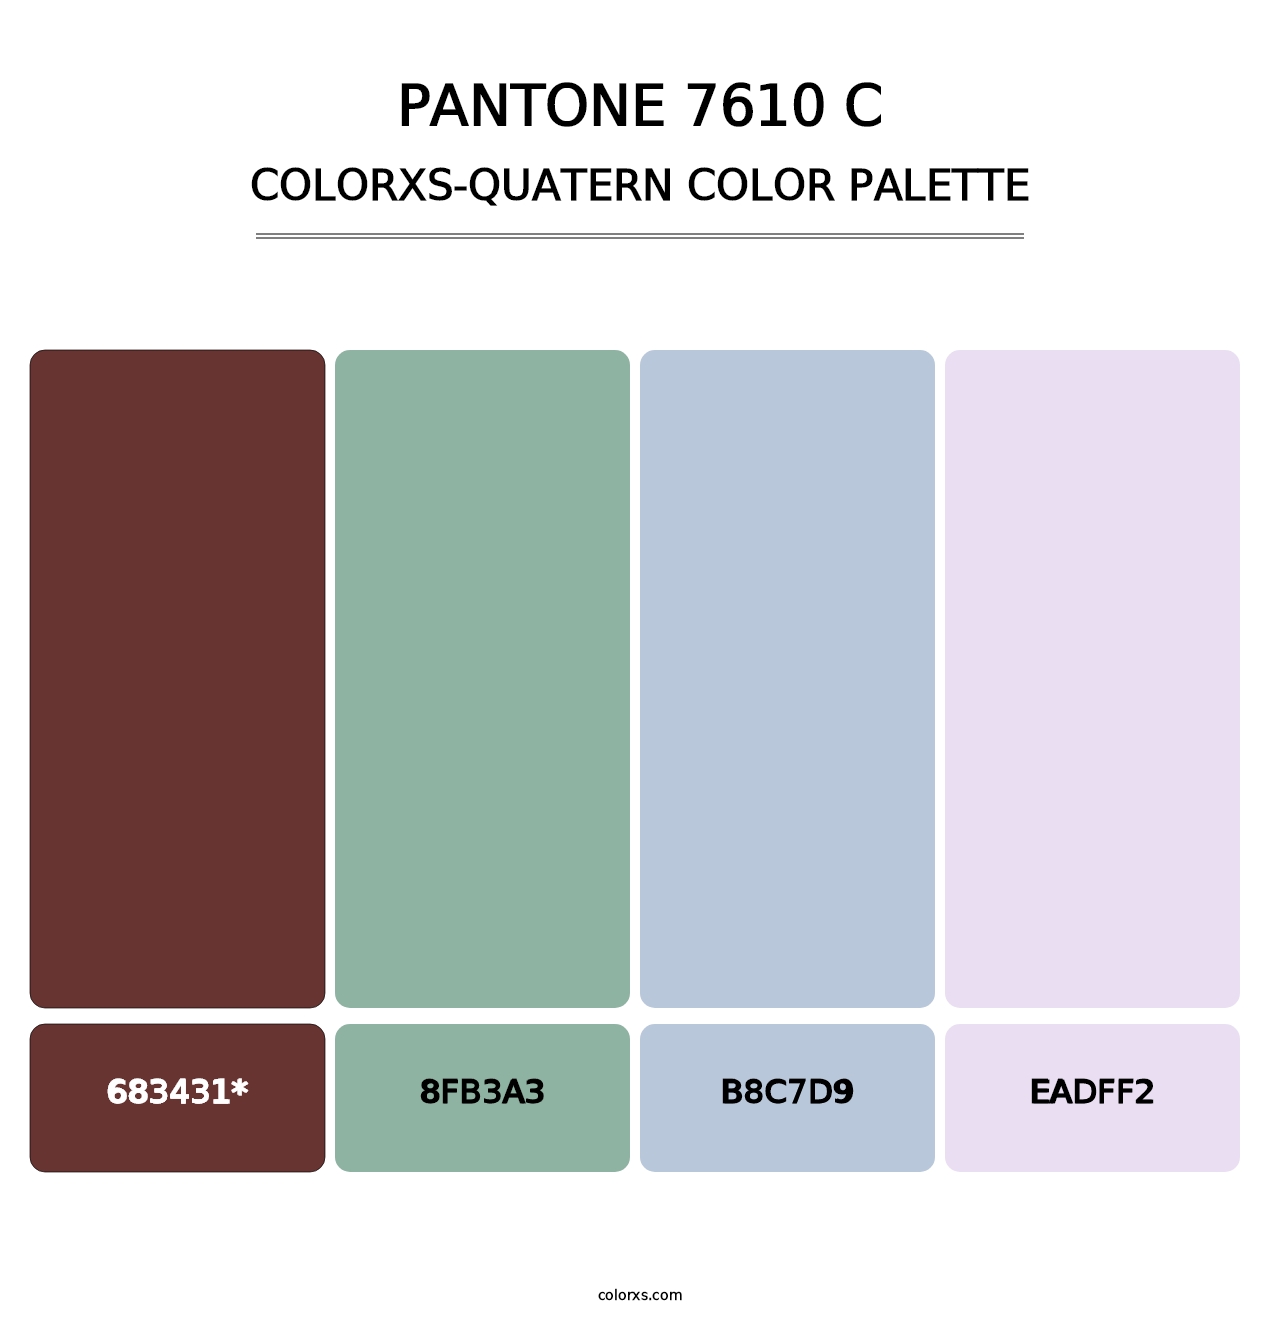 PANTONE 7610 C - Colorxs Quatern Palette